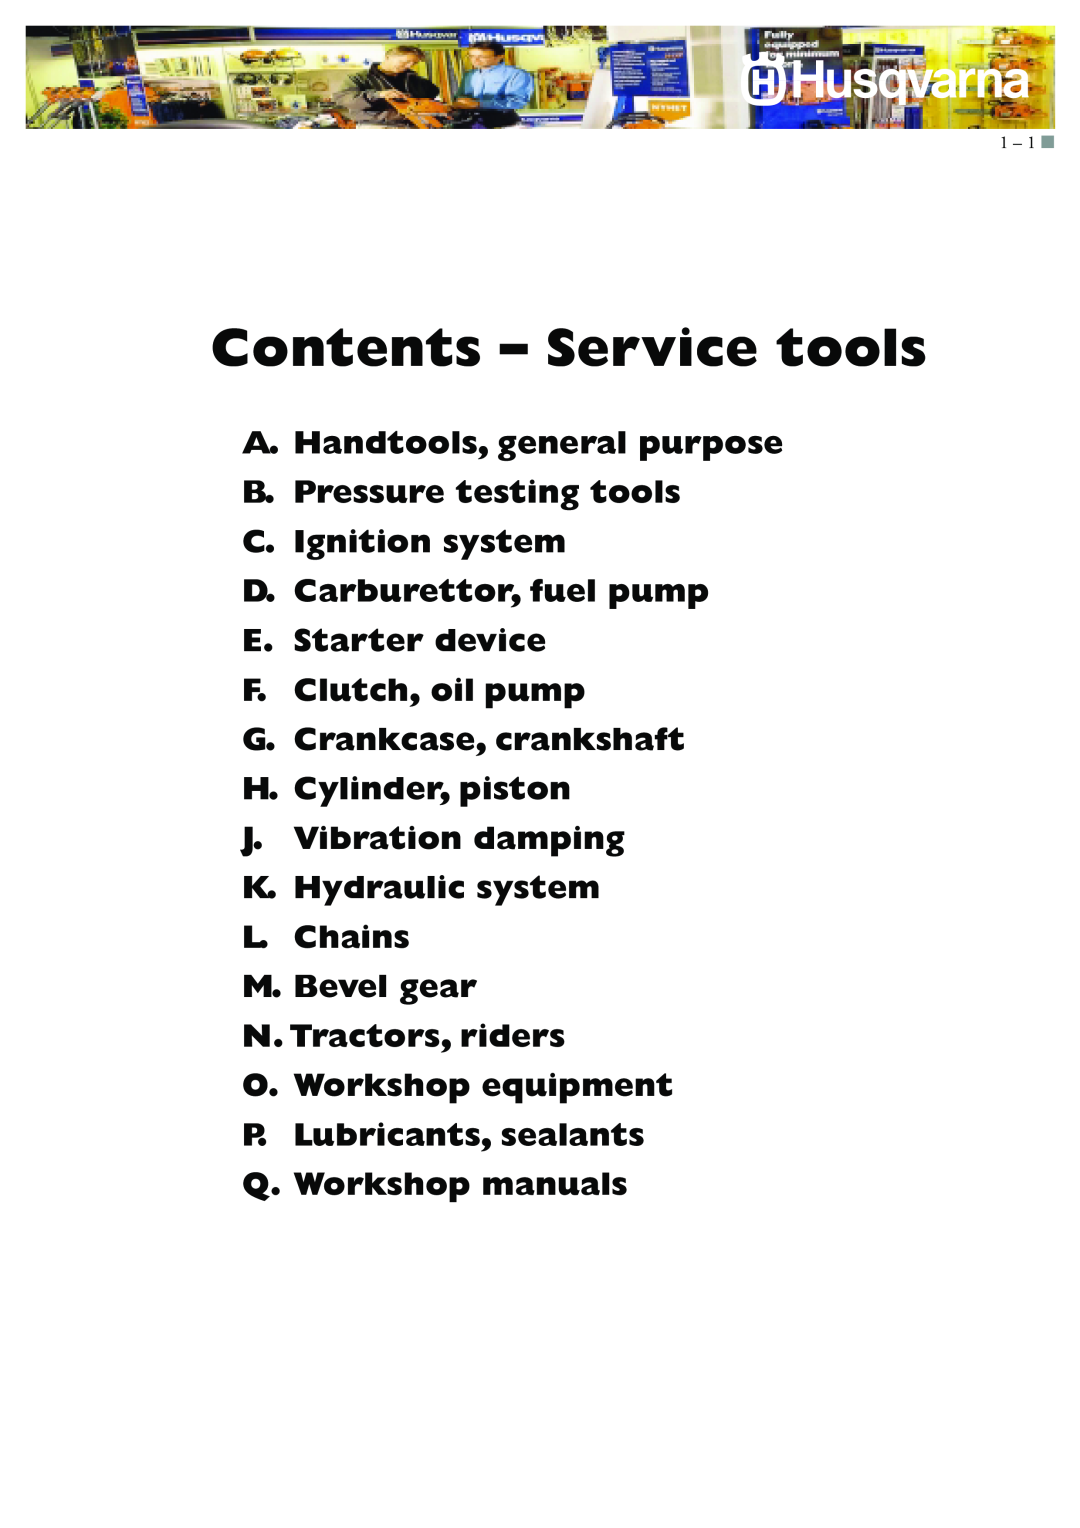 Husqvarna I0300046 Contents - Service tools, A.Handtools, general purpose, B.Pressure testing tools C.Ignition system 